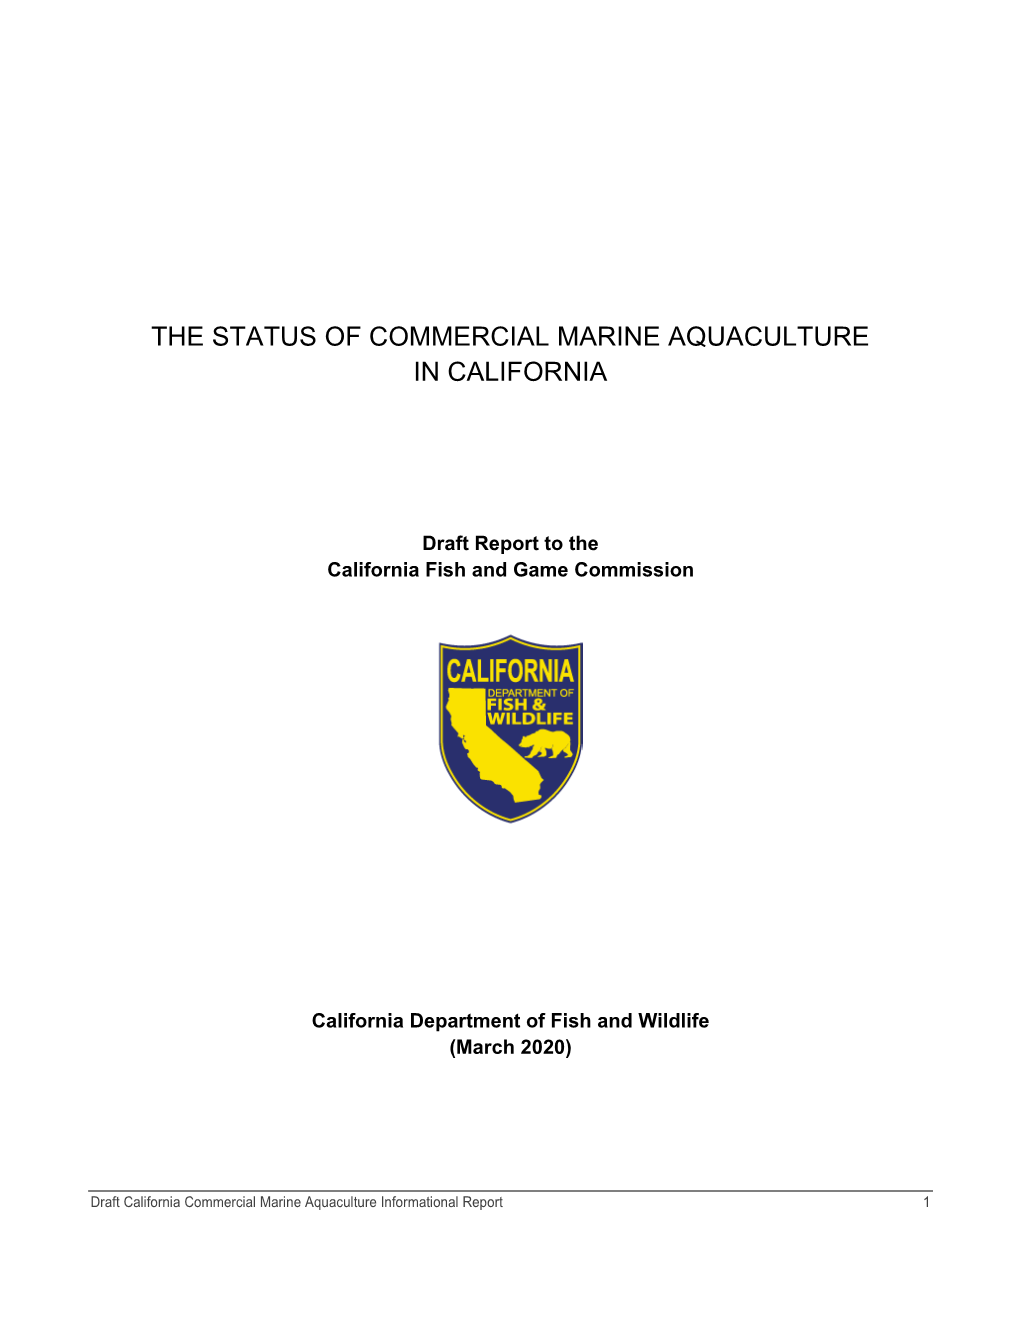 The Status of Commercial Marine Aquaculture in California